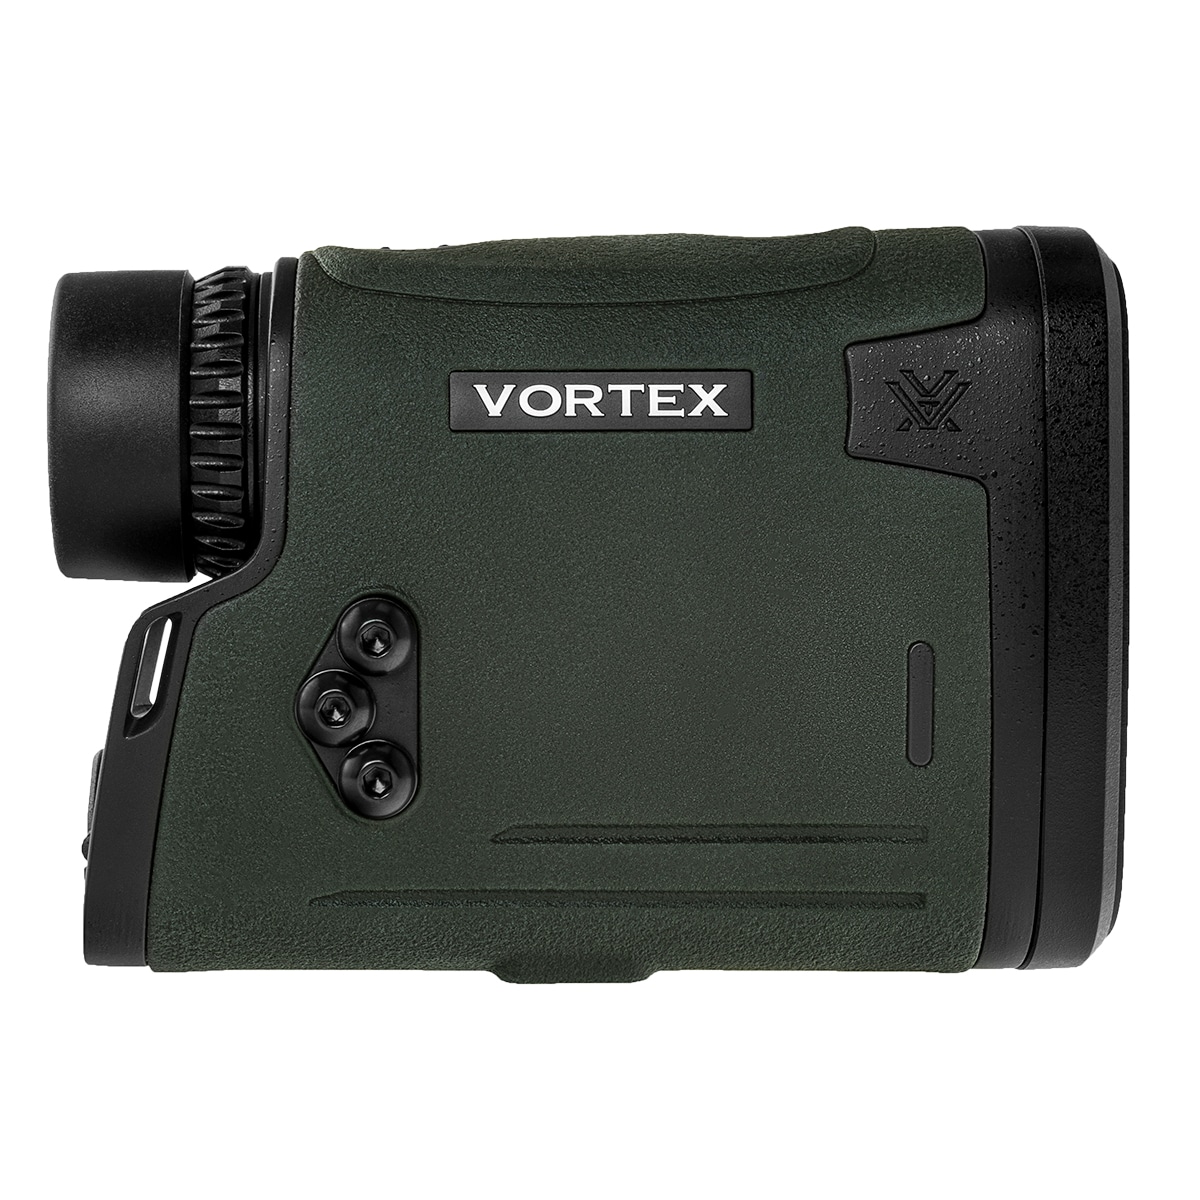 Dalmierz laserowy Vortex Viper HD3000